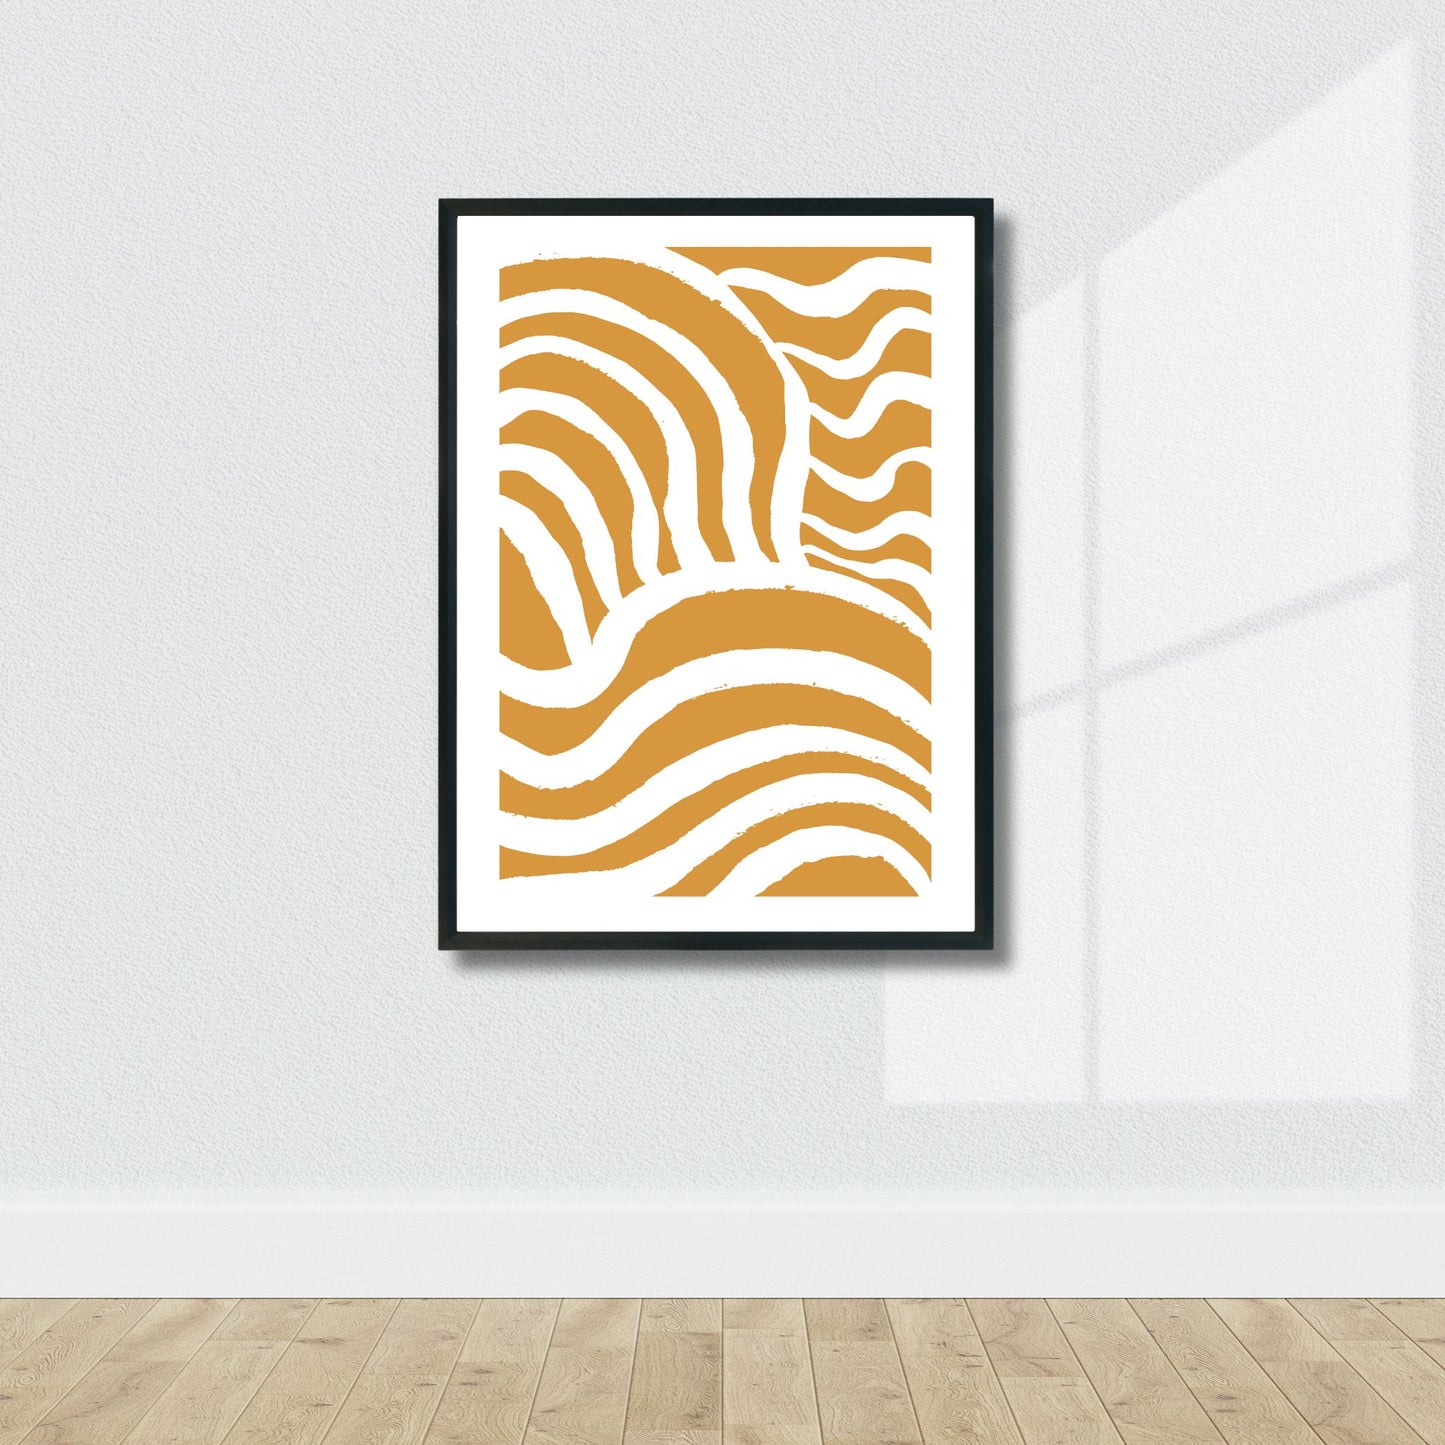 Modern Art - plakat i grafisk design i gul-oransje bølgende abstrakt mønster. Illustrasjonsbilde av plakat i sort ramme.